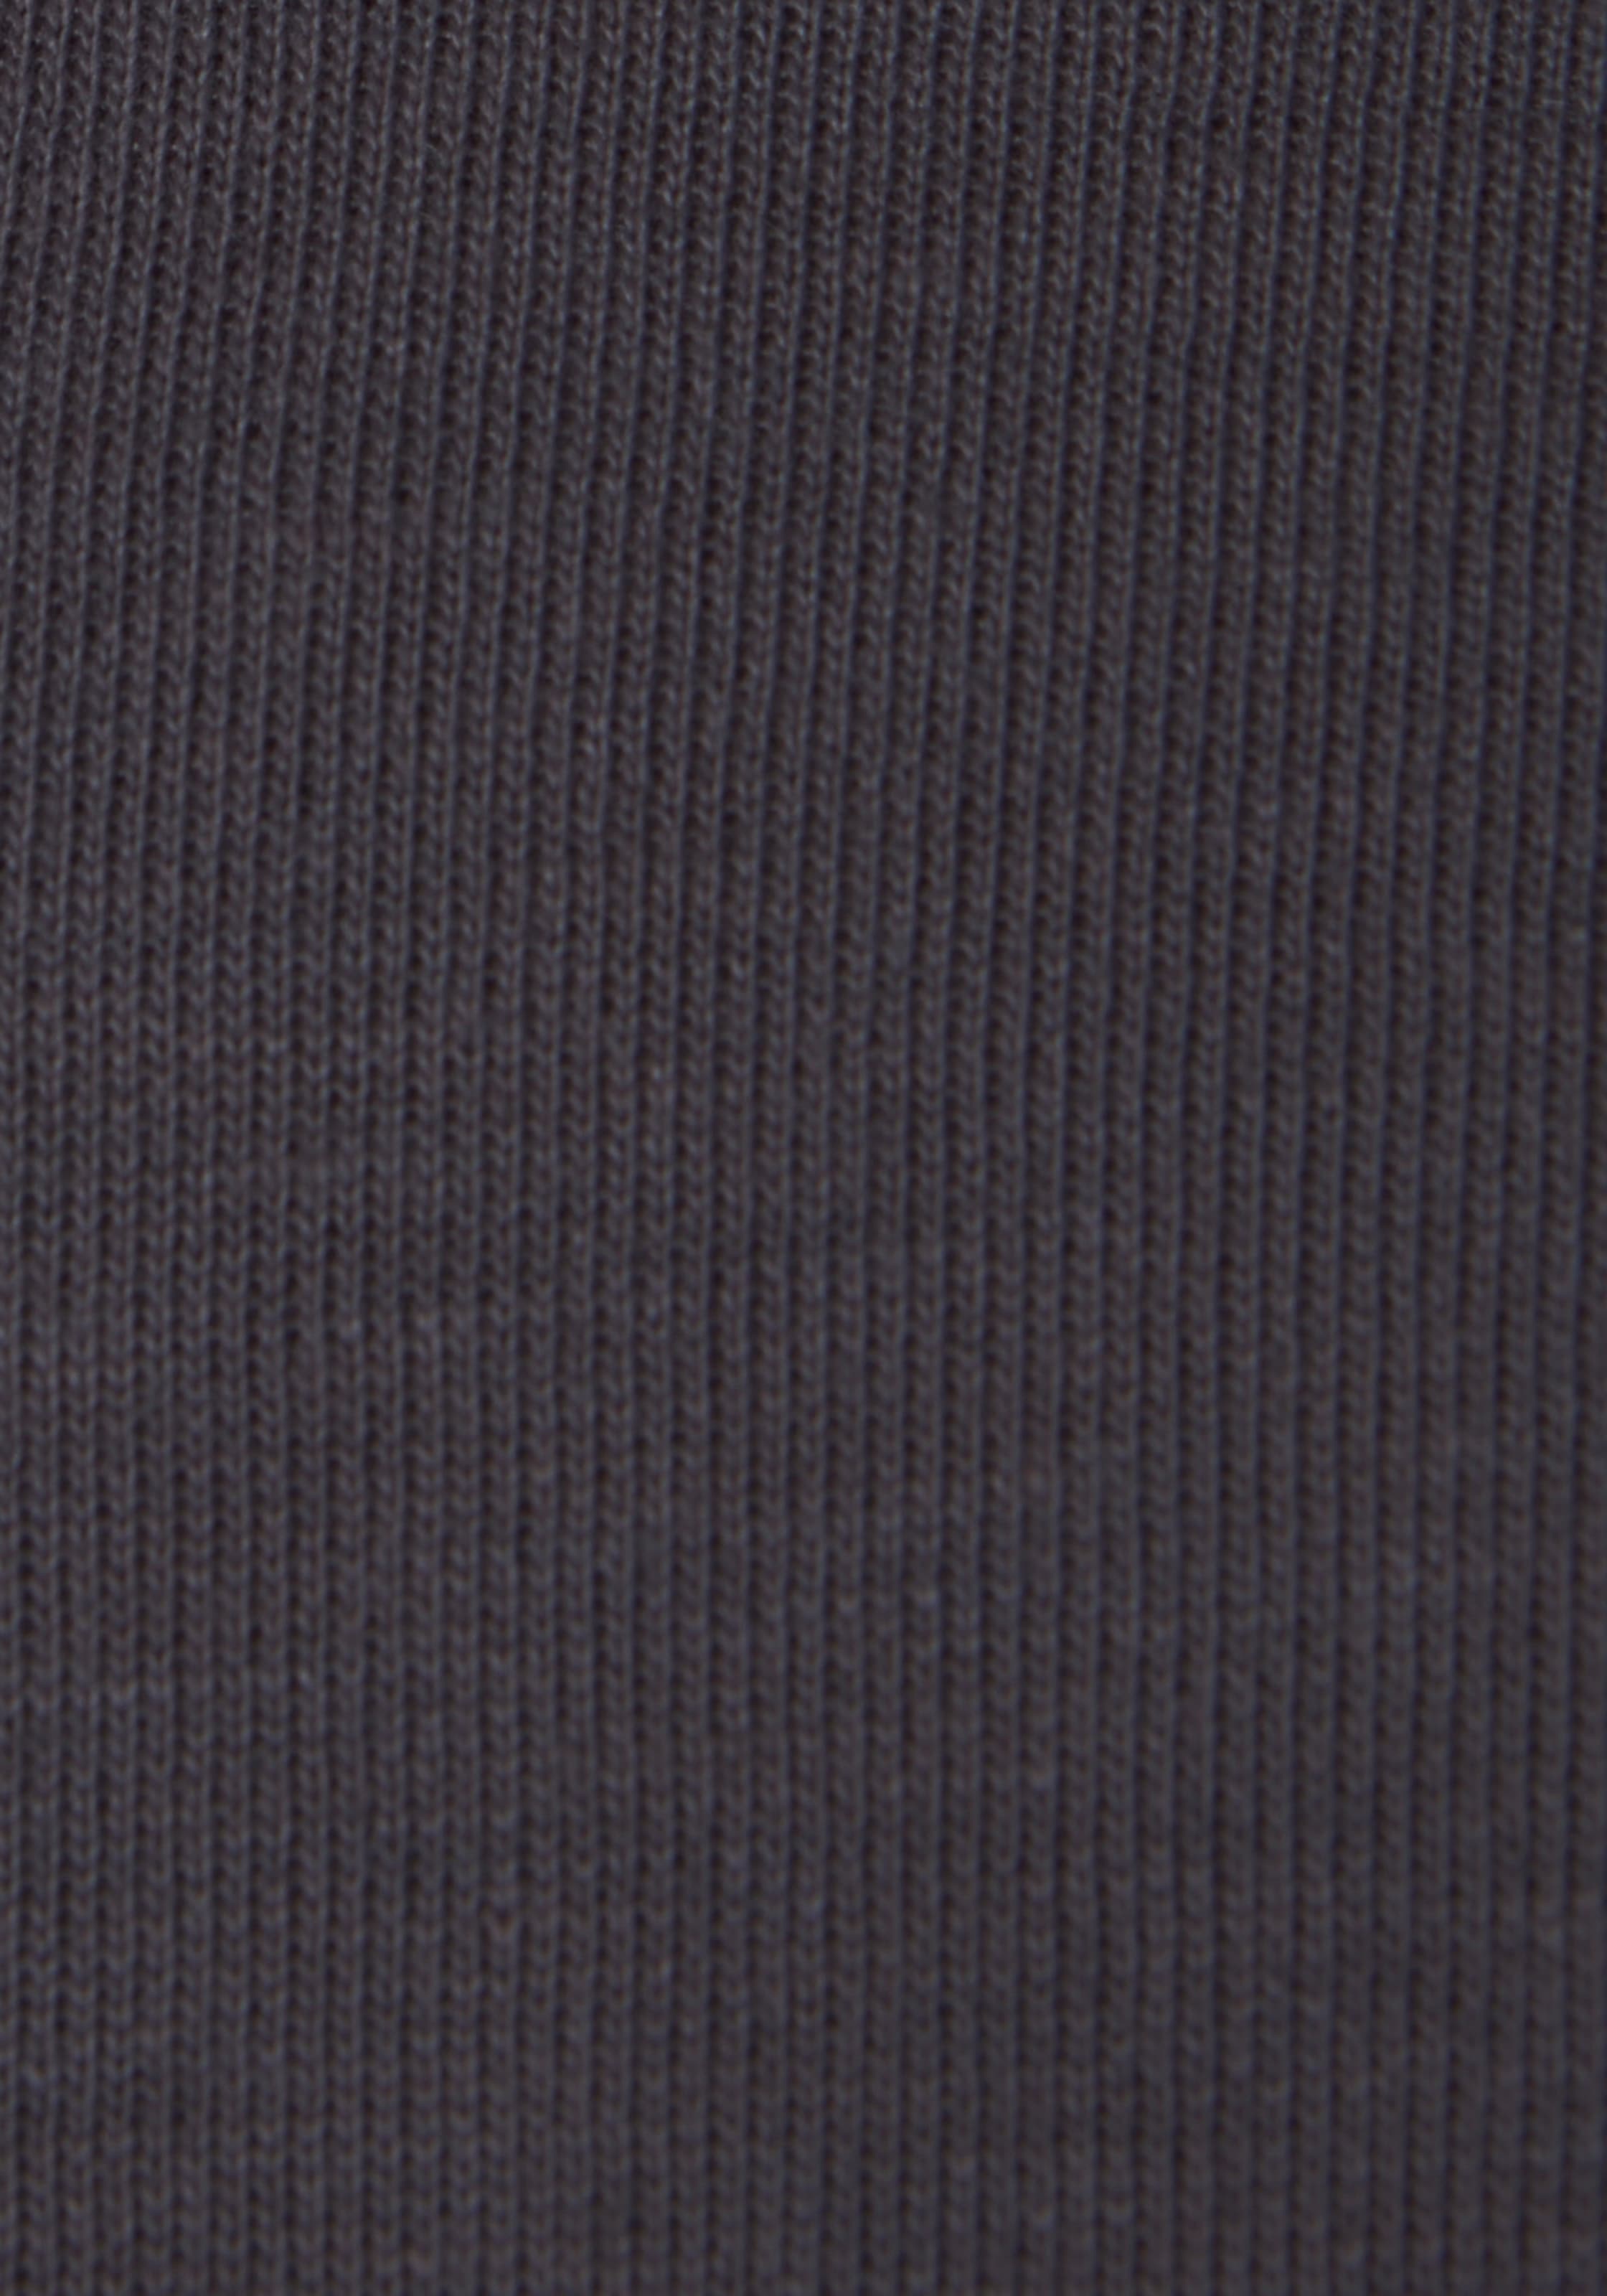 Bench. Loungewear Sweatshirt, mit Logodruck und Stickerei, Loungeanzug